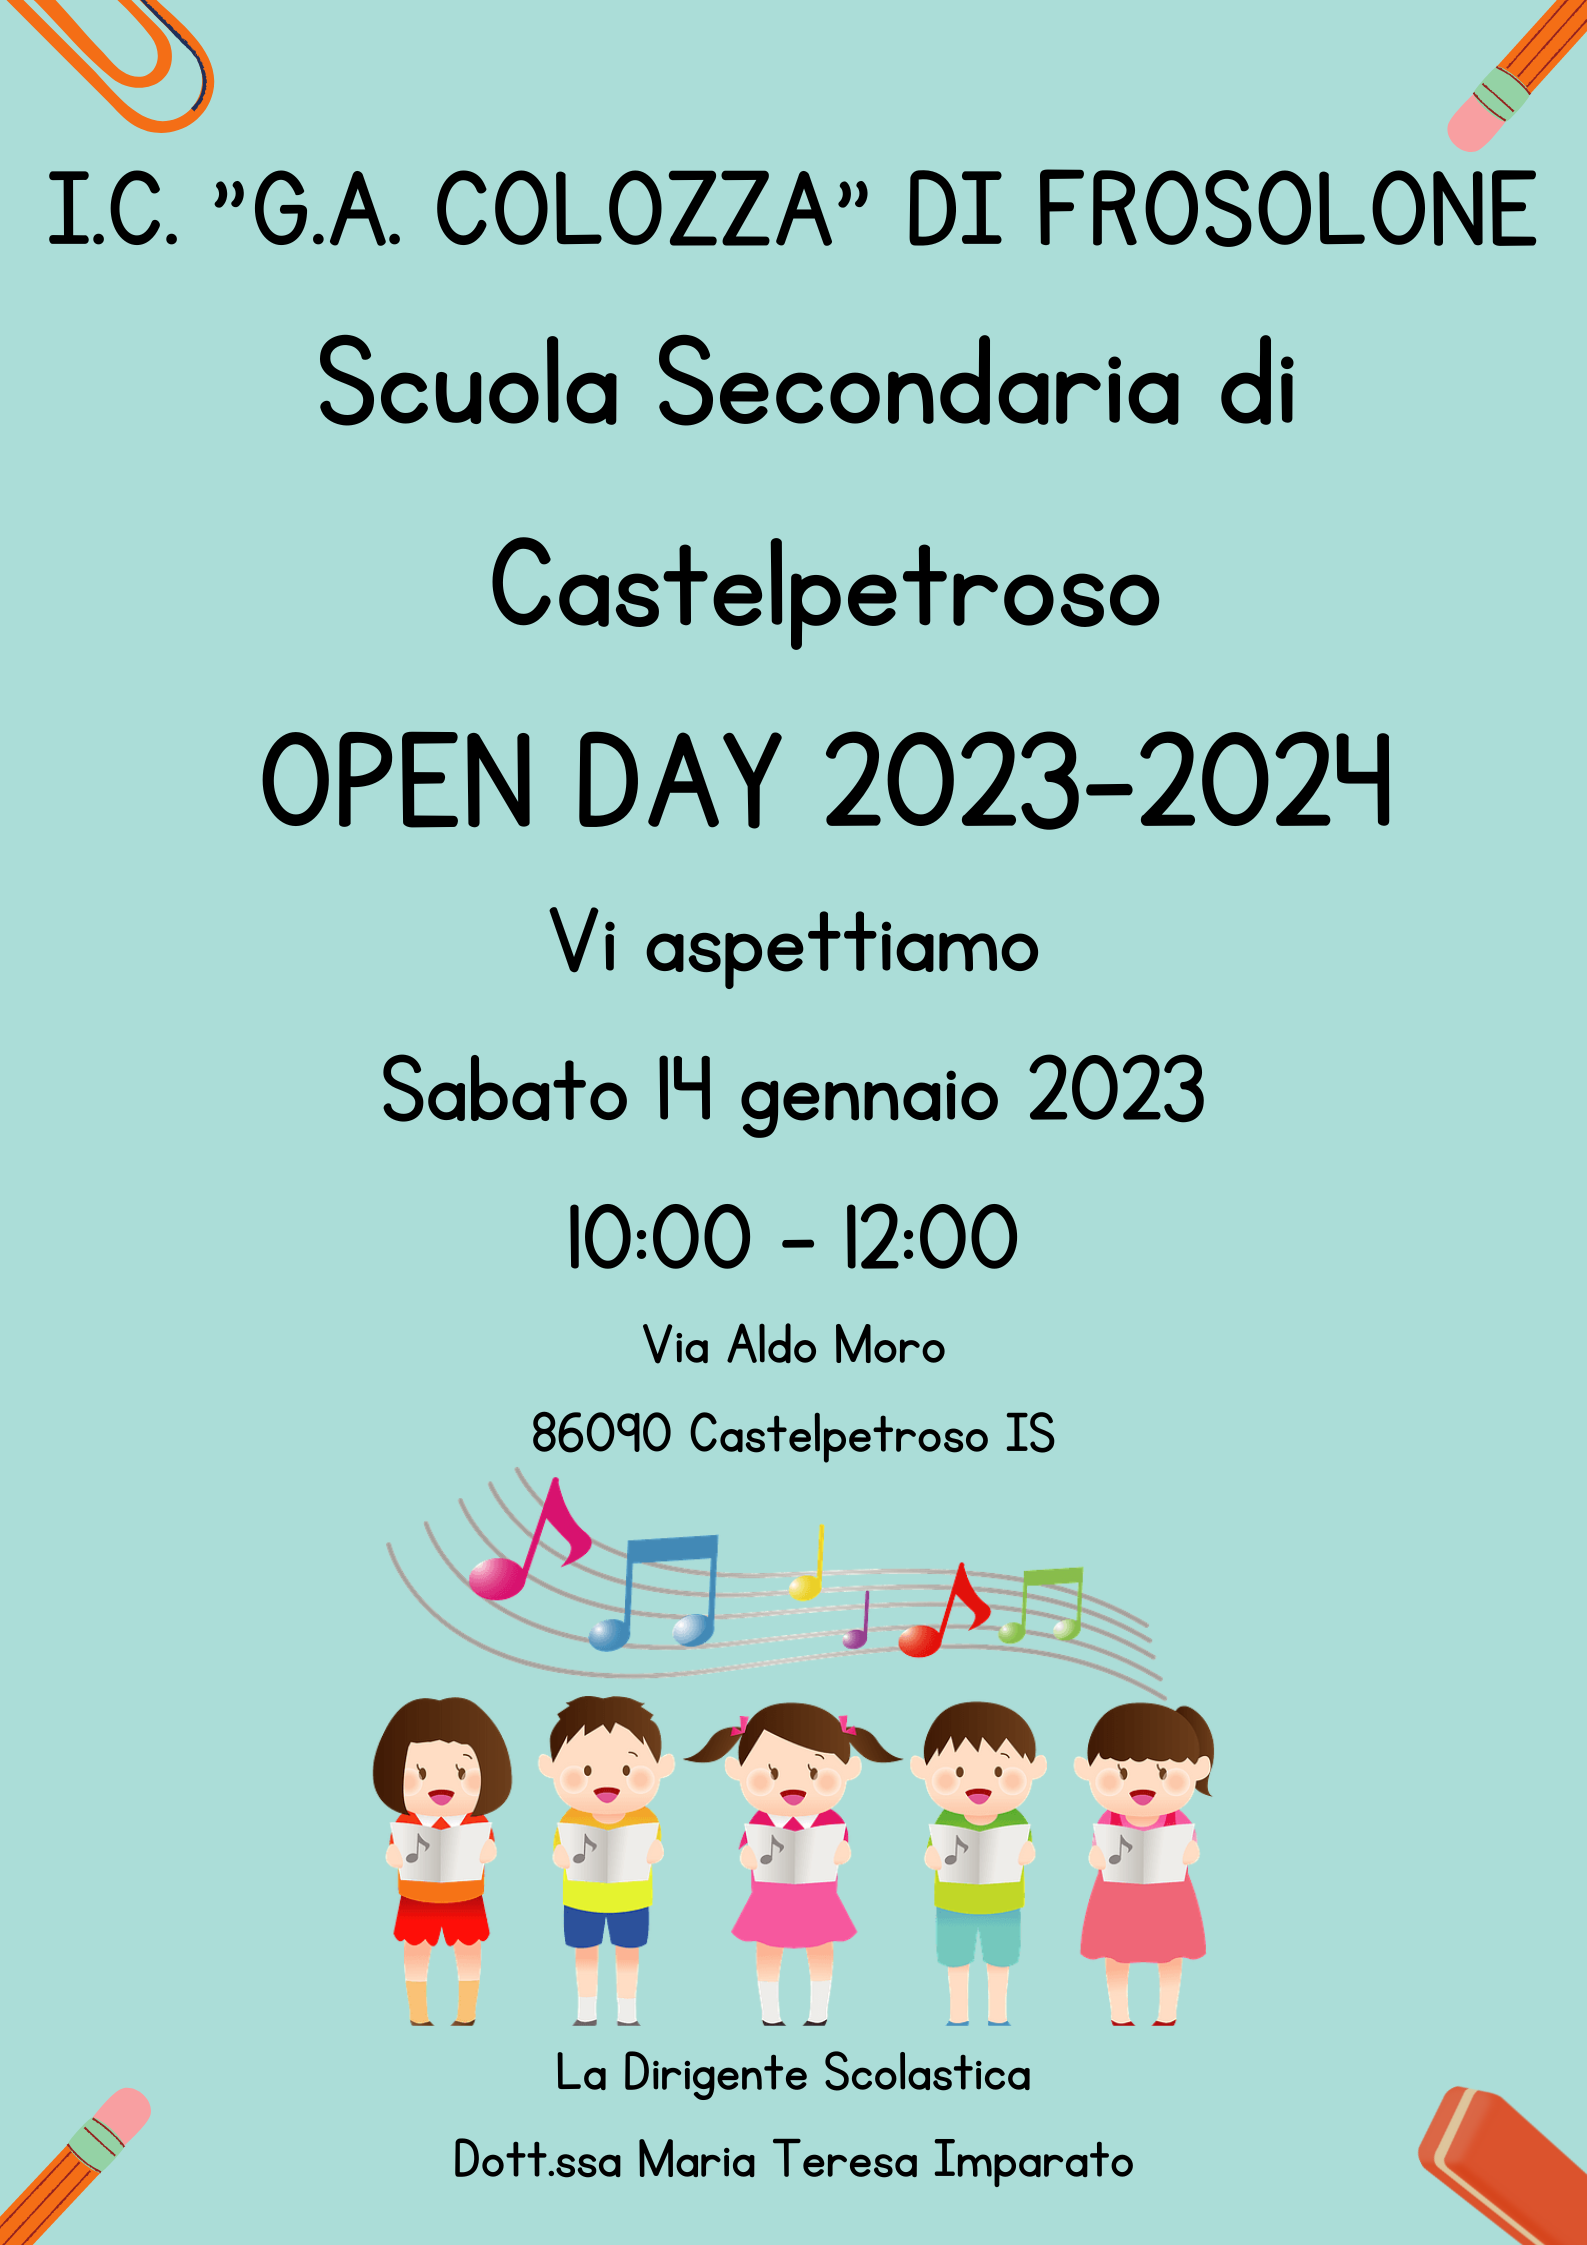 Al momento stai visualizzando Open Day Scuola Secondaria di Castelpetroso